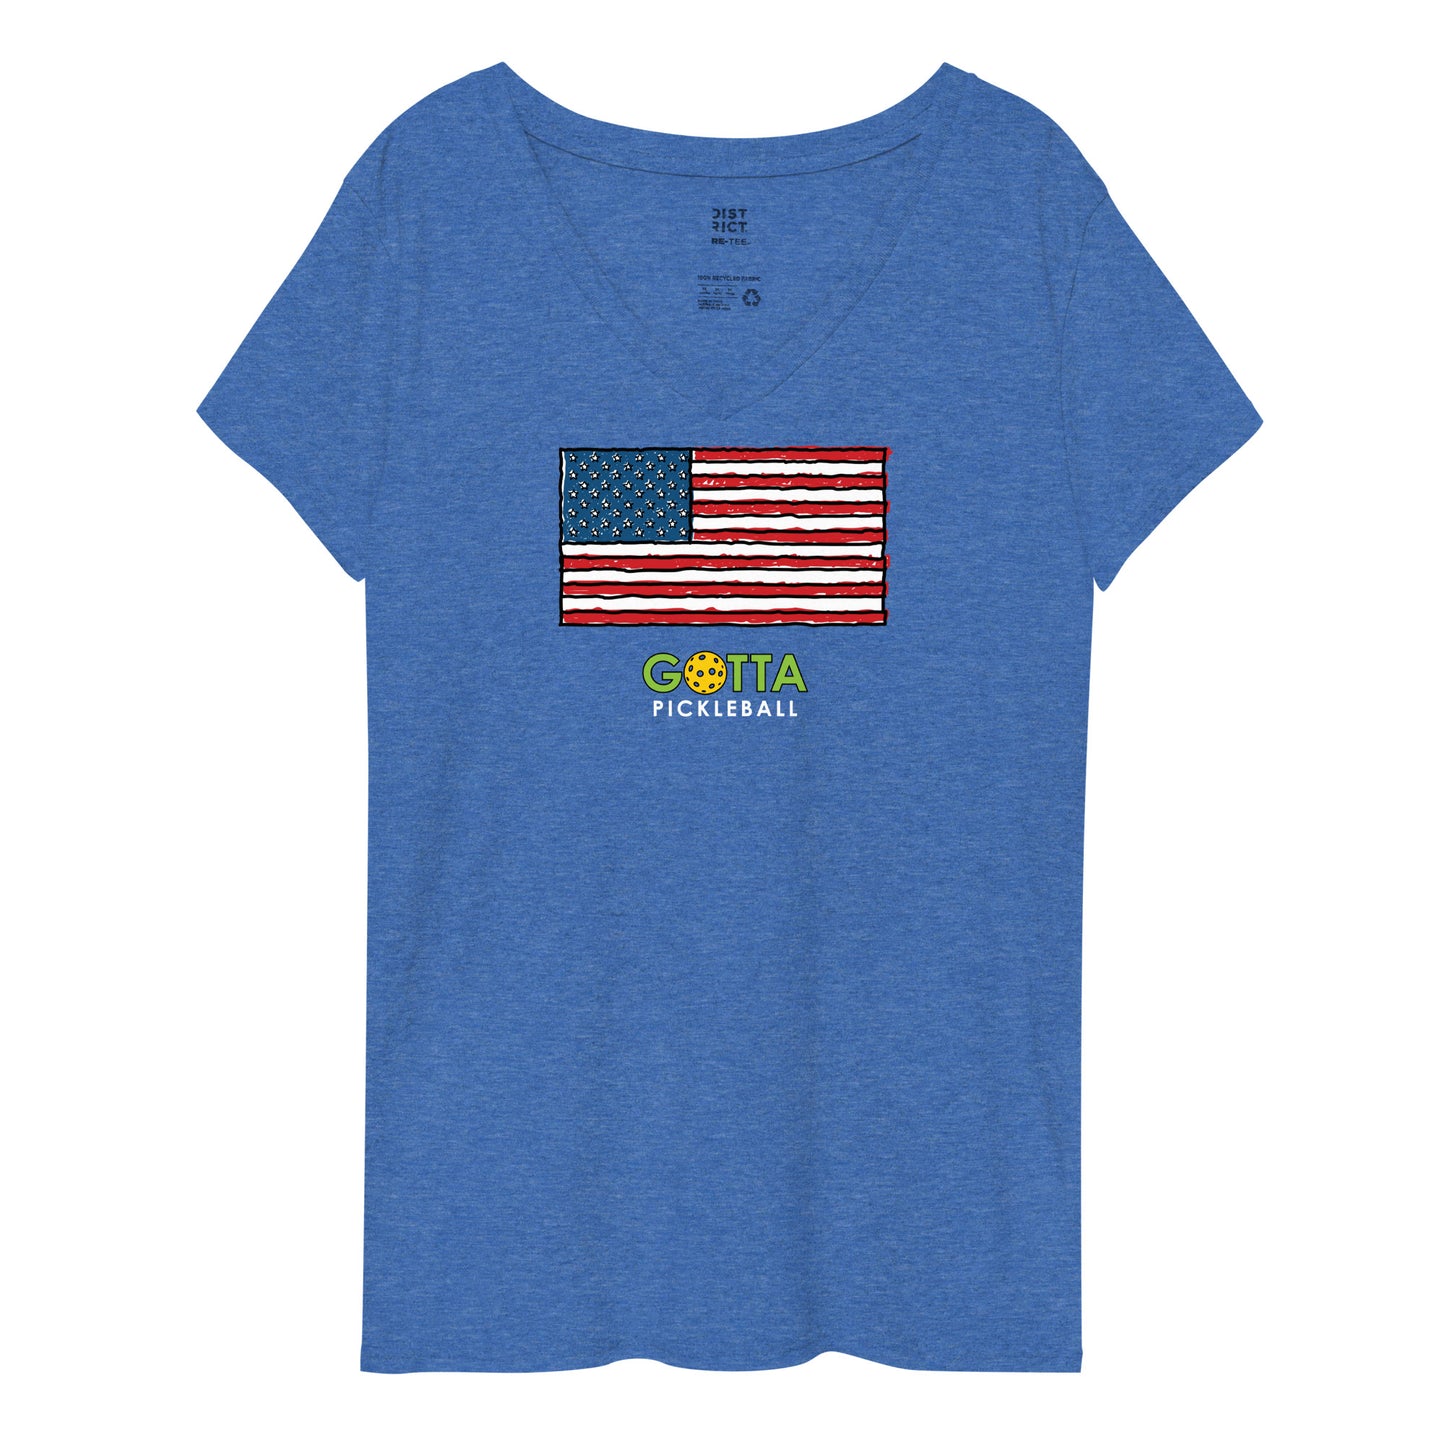 gotta pickleball v-neck t-shirt American flag